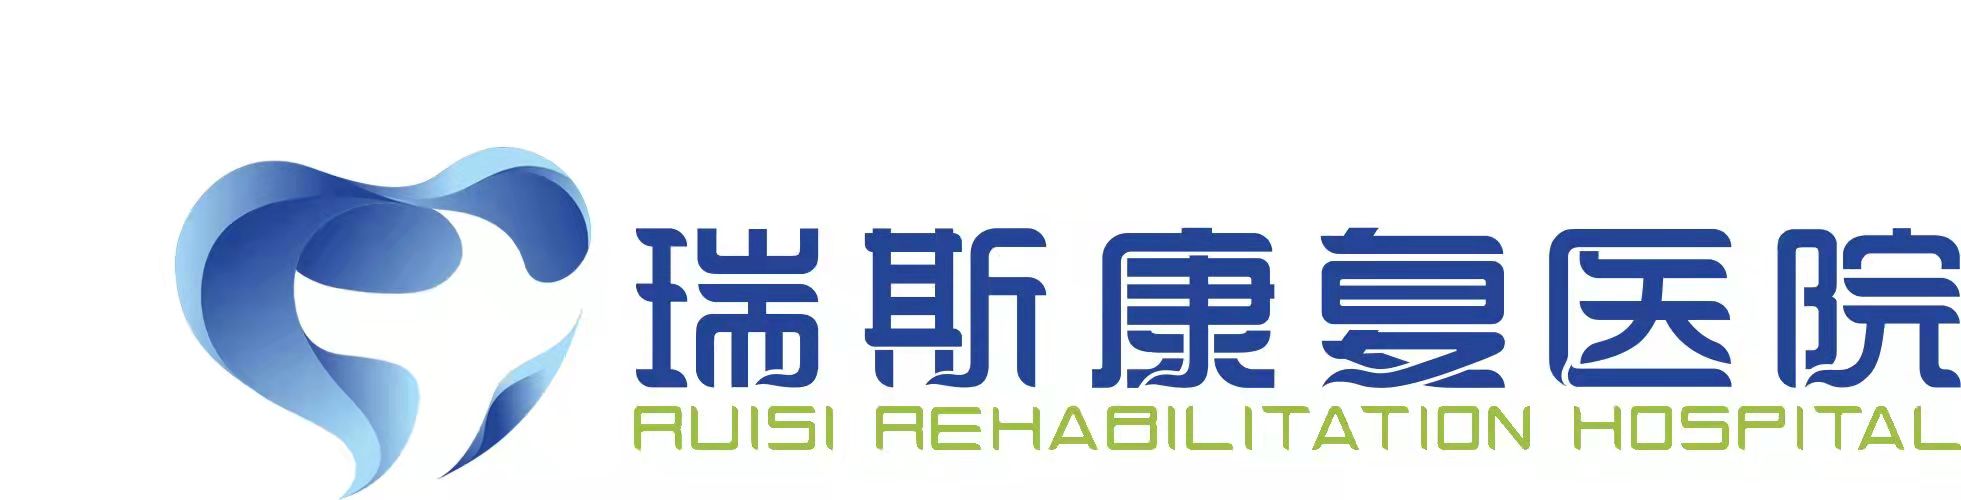 莆田瑞斯康复医院logo图片